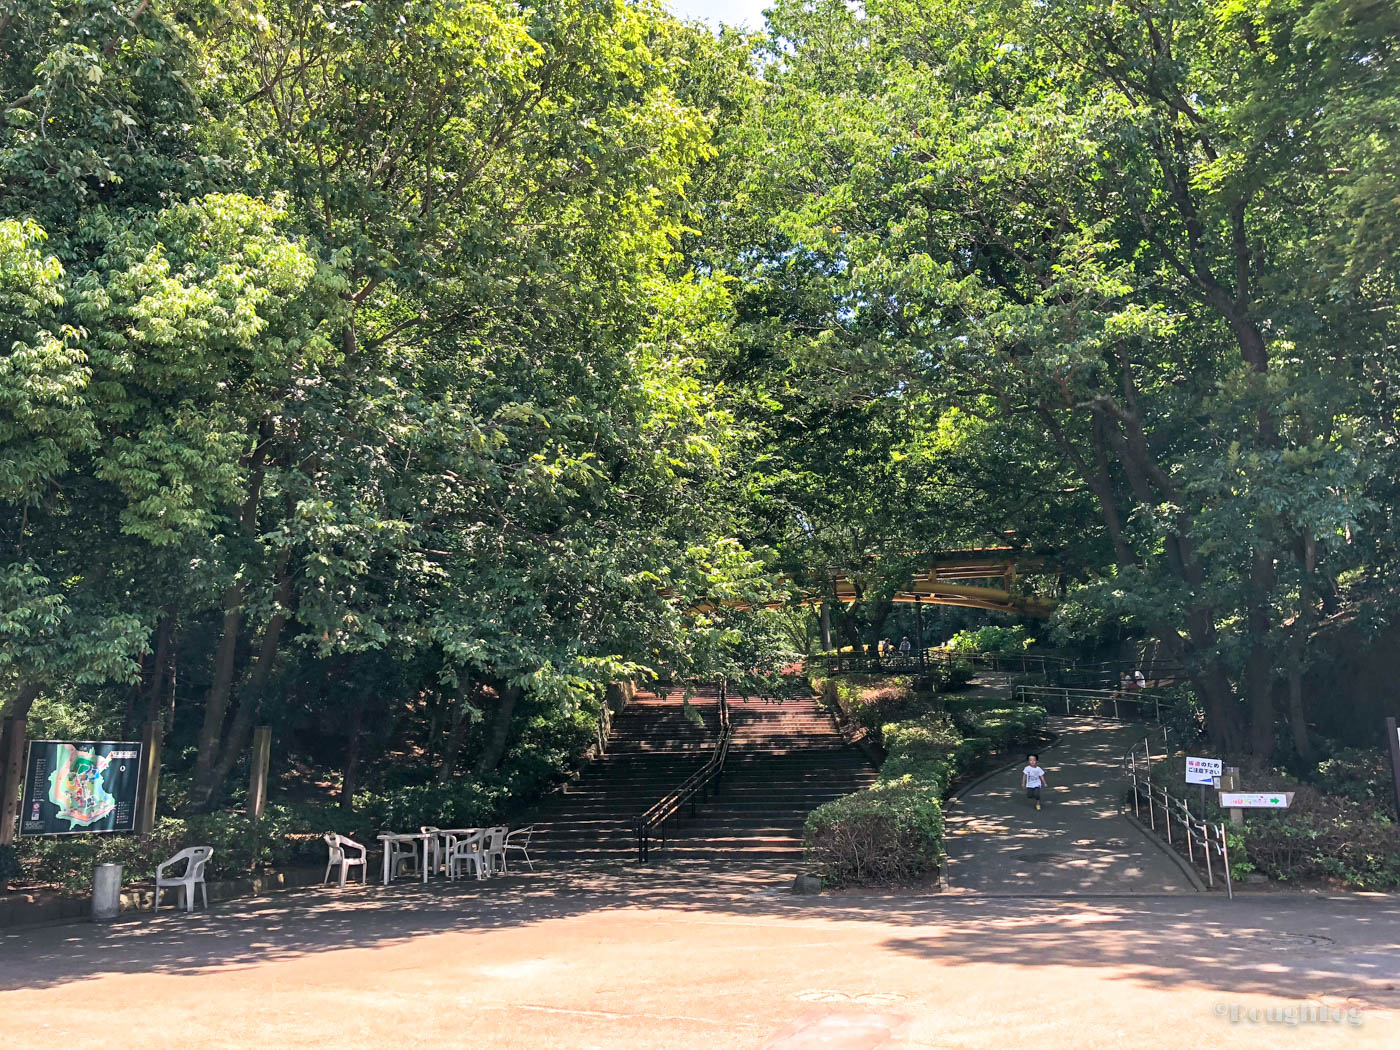 千葉市動物公園の西口ゲートより入園すると木々が並ぶ坂道